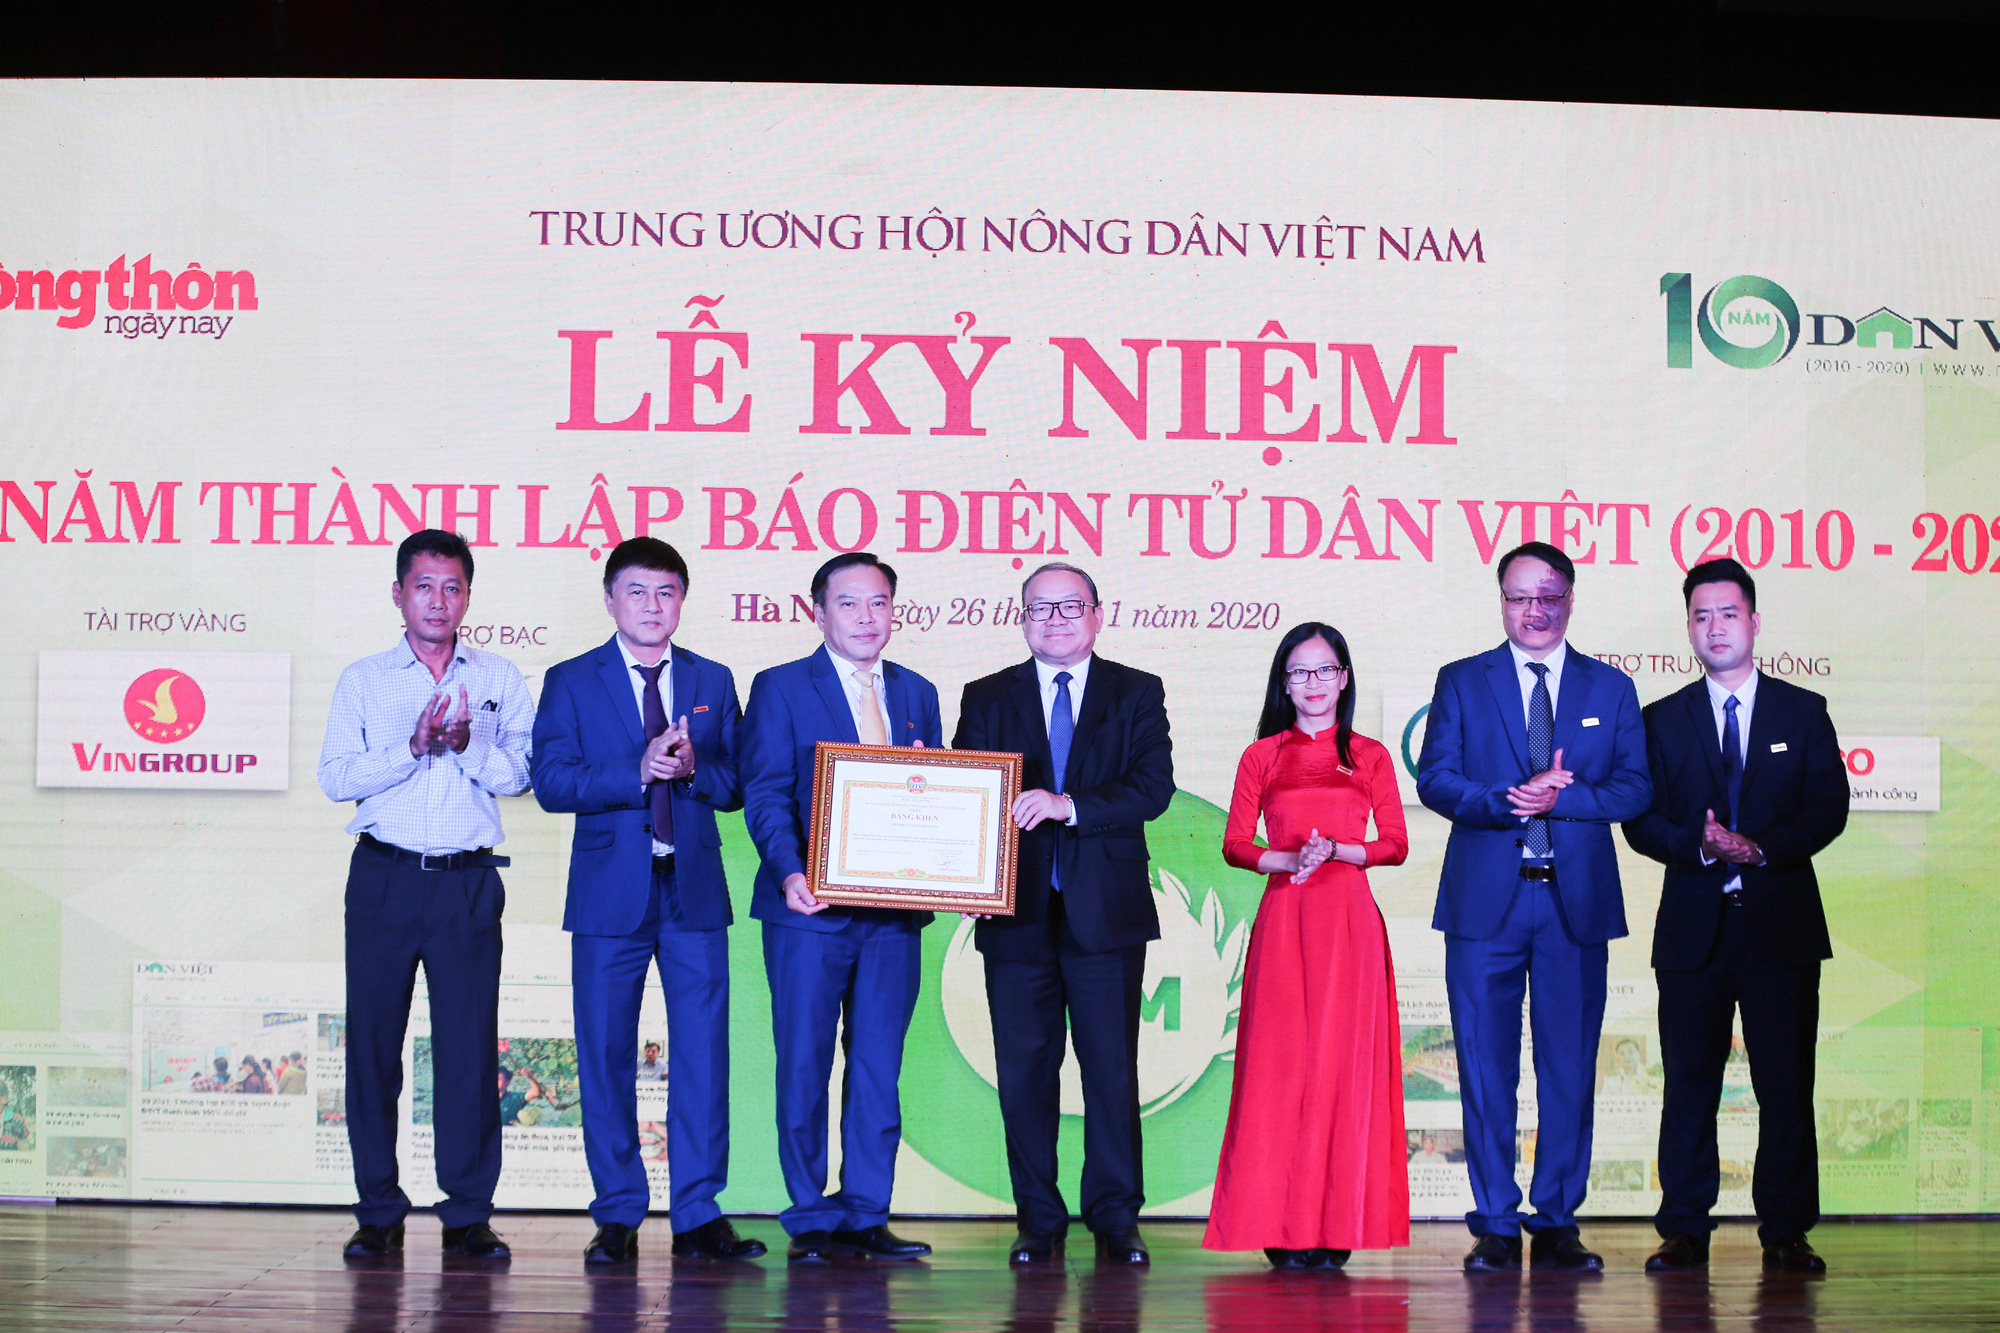 Ảnh: Đón nhận nhiều bằng khen của các Bộ, Ngành trong Lễ kỷ niệm 10 năm Dân Việt - Ảnh 1.